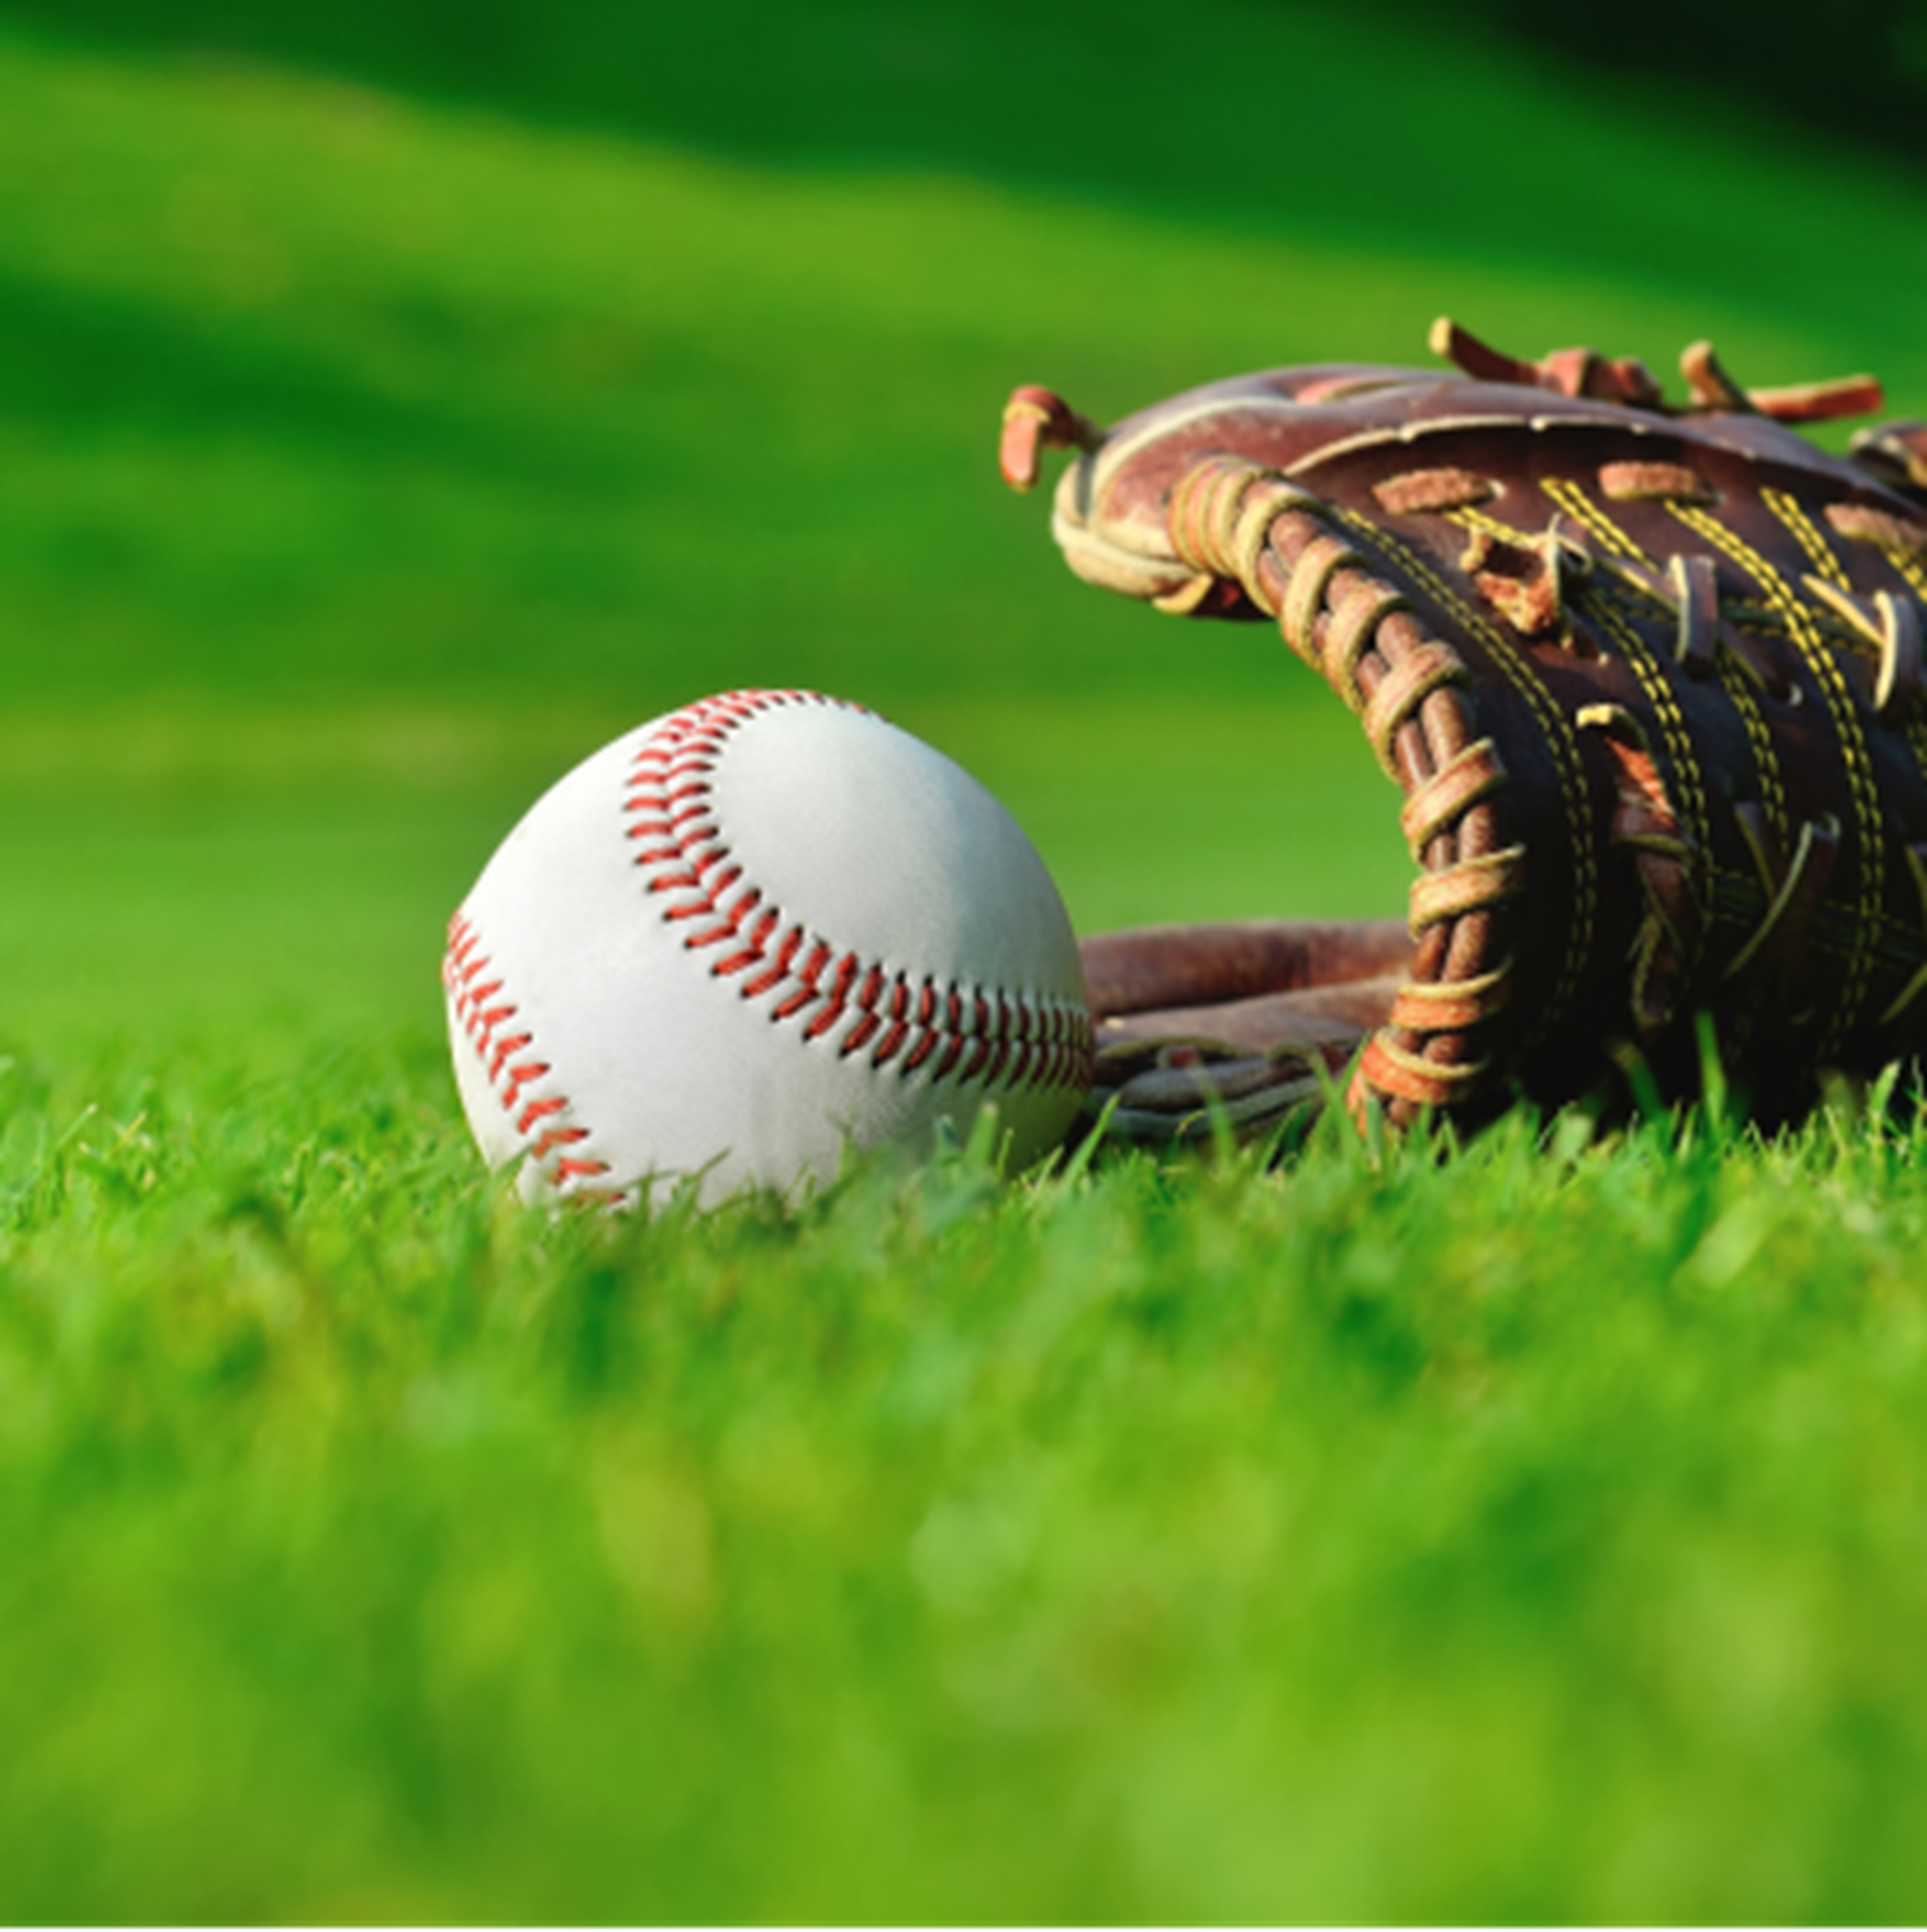 Baseball mitt and ball on grass lawn